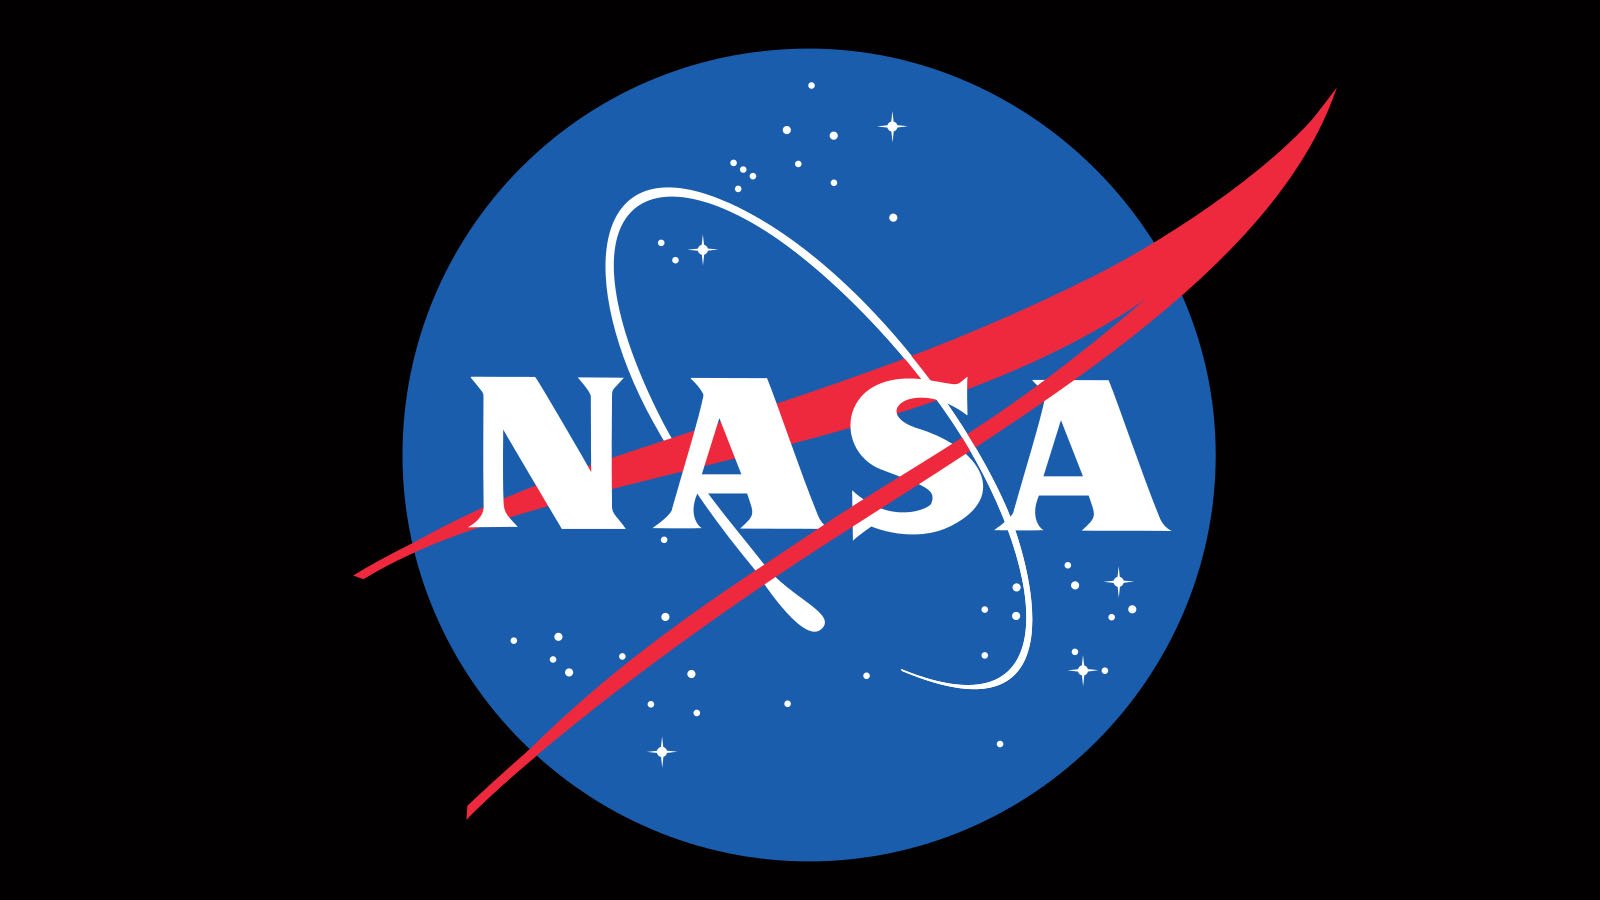 NASA zahlt $0,1 an Lunar Outpost für den Abbau von Mondregolith